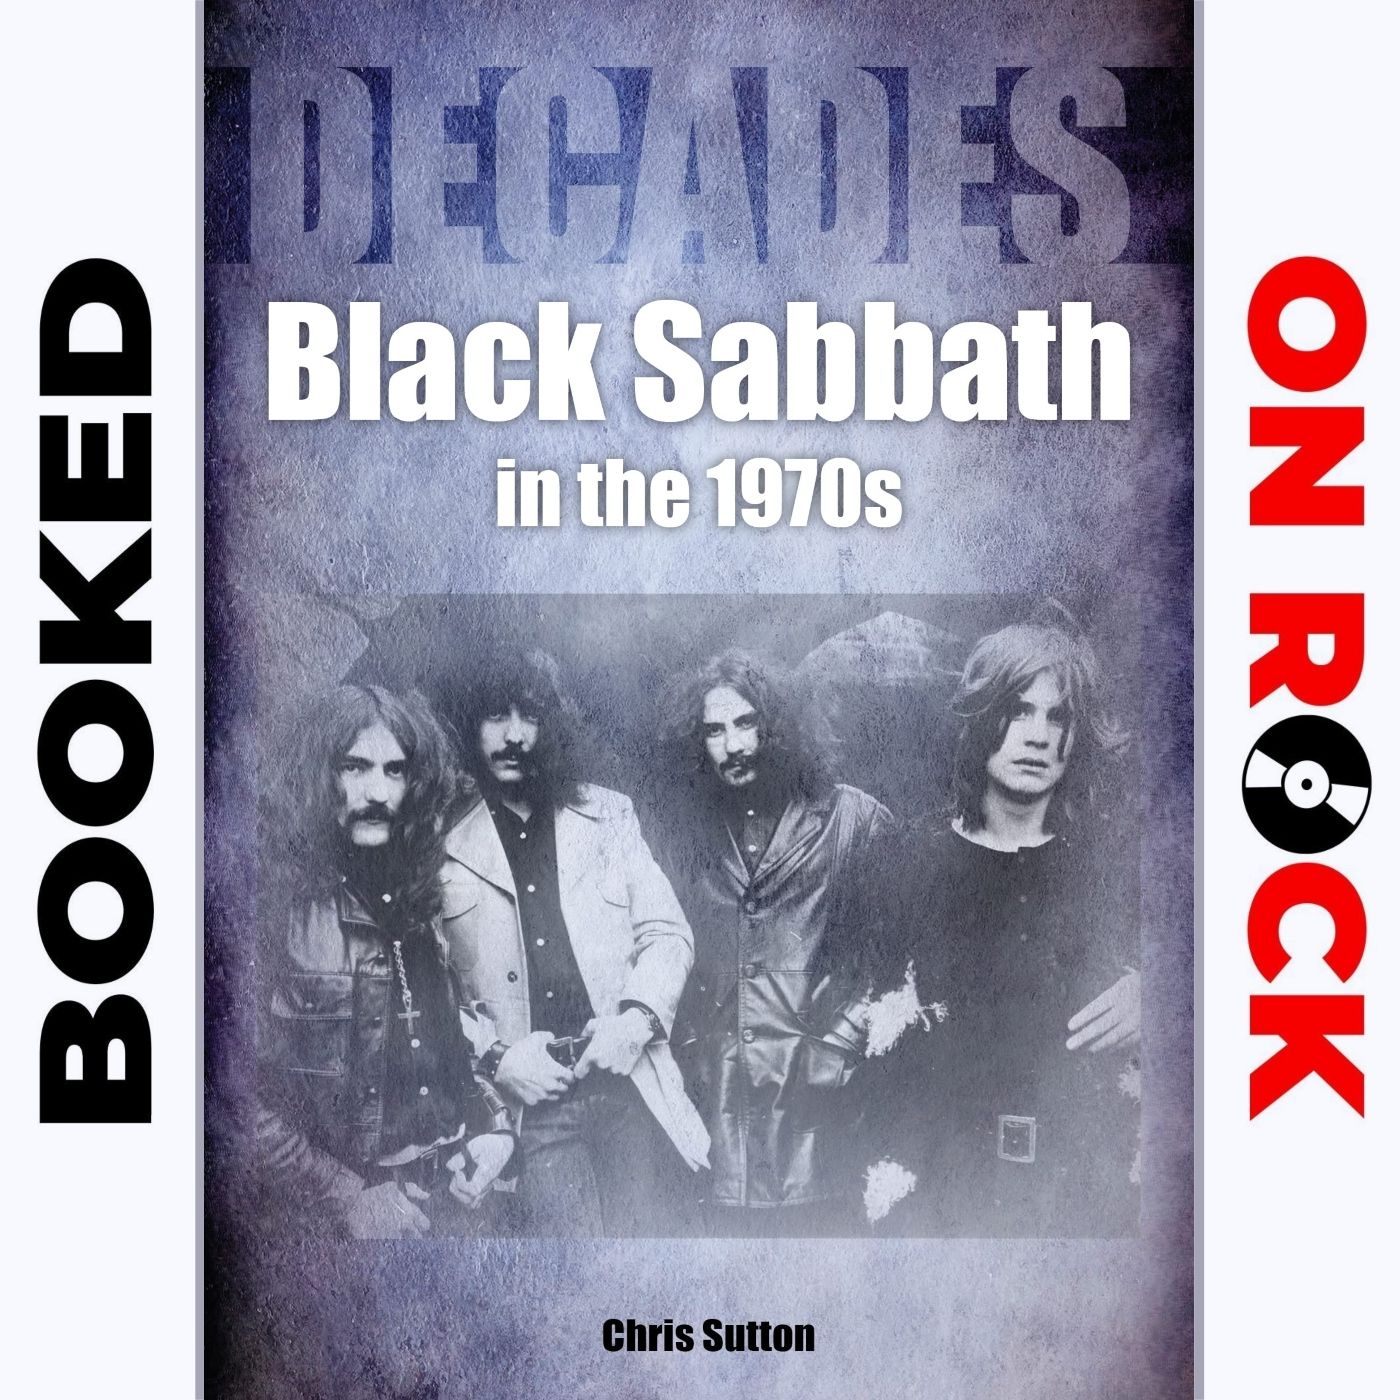 ”Black Sabbath in the 1970s”/Chris Sutton [Episode 57]